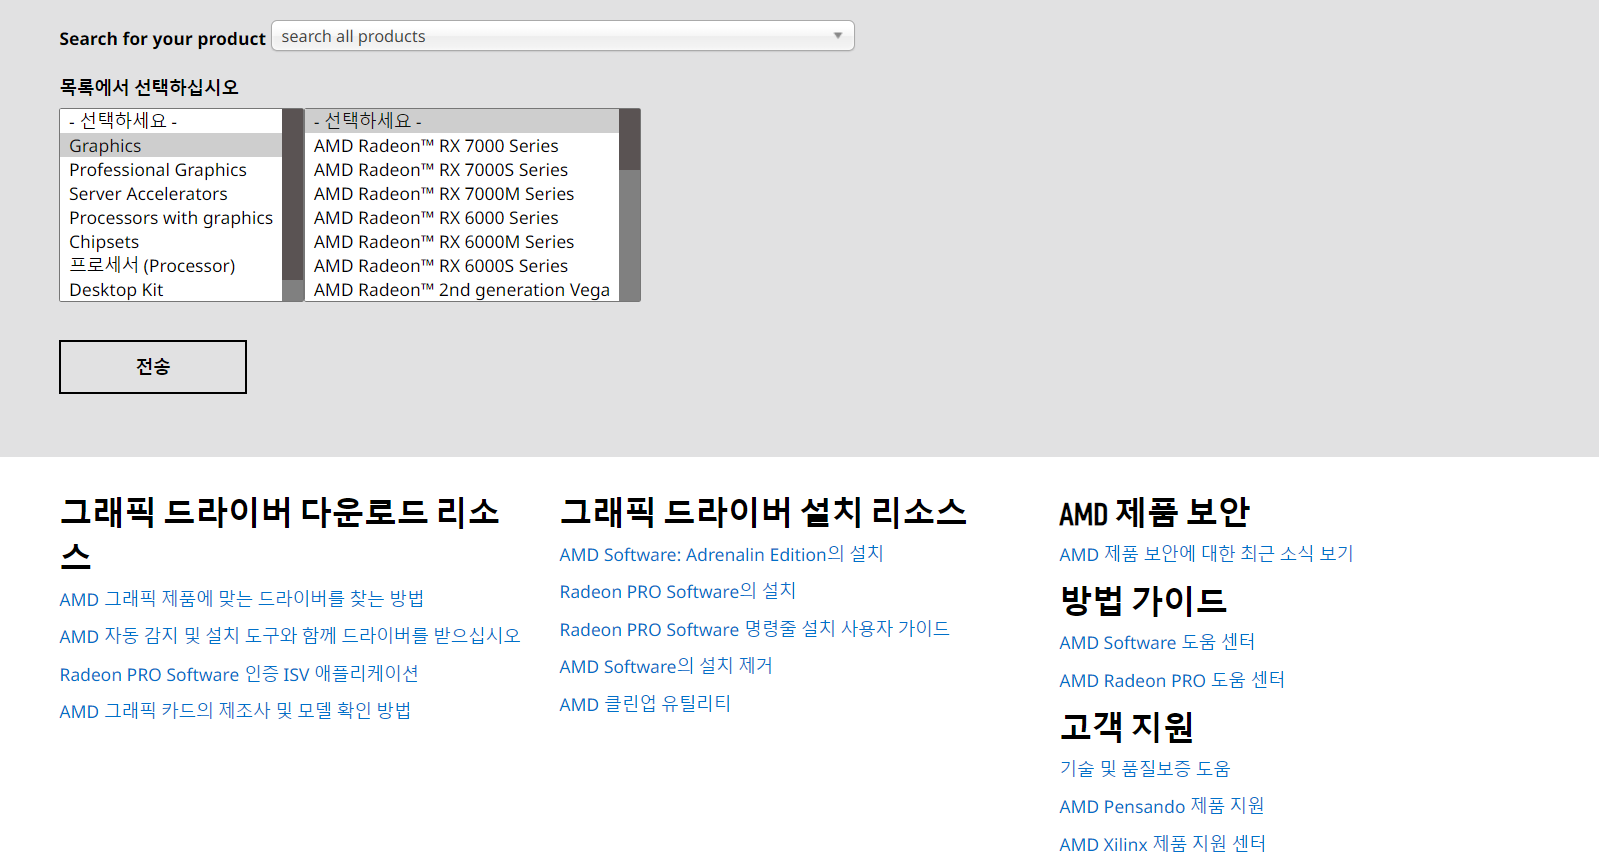 AMD 지원 센터 홈페이지 화면